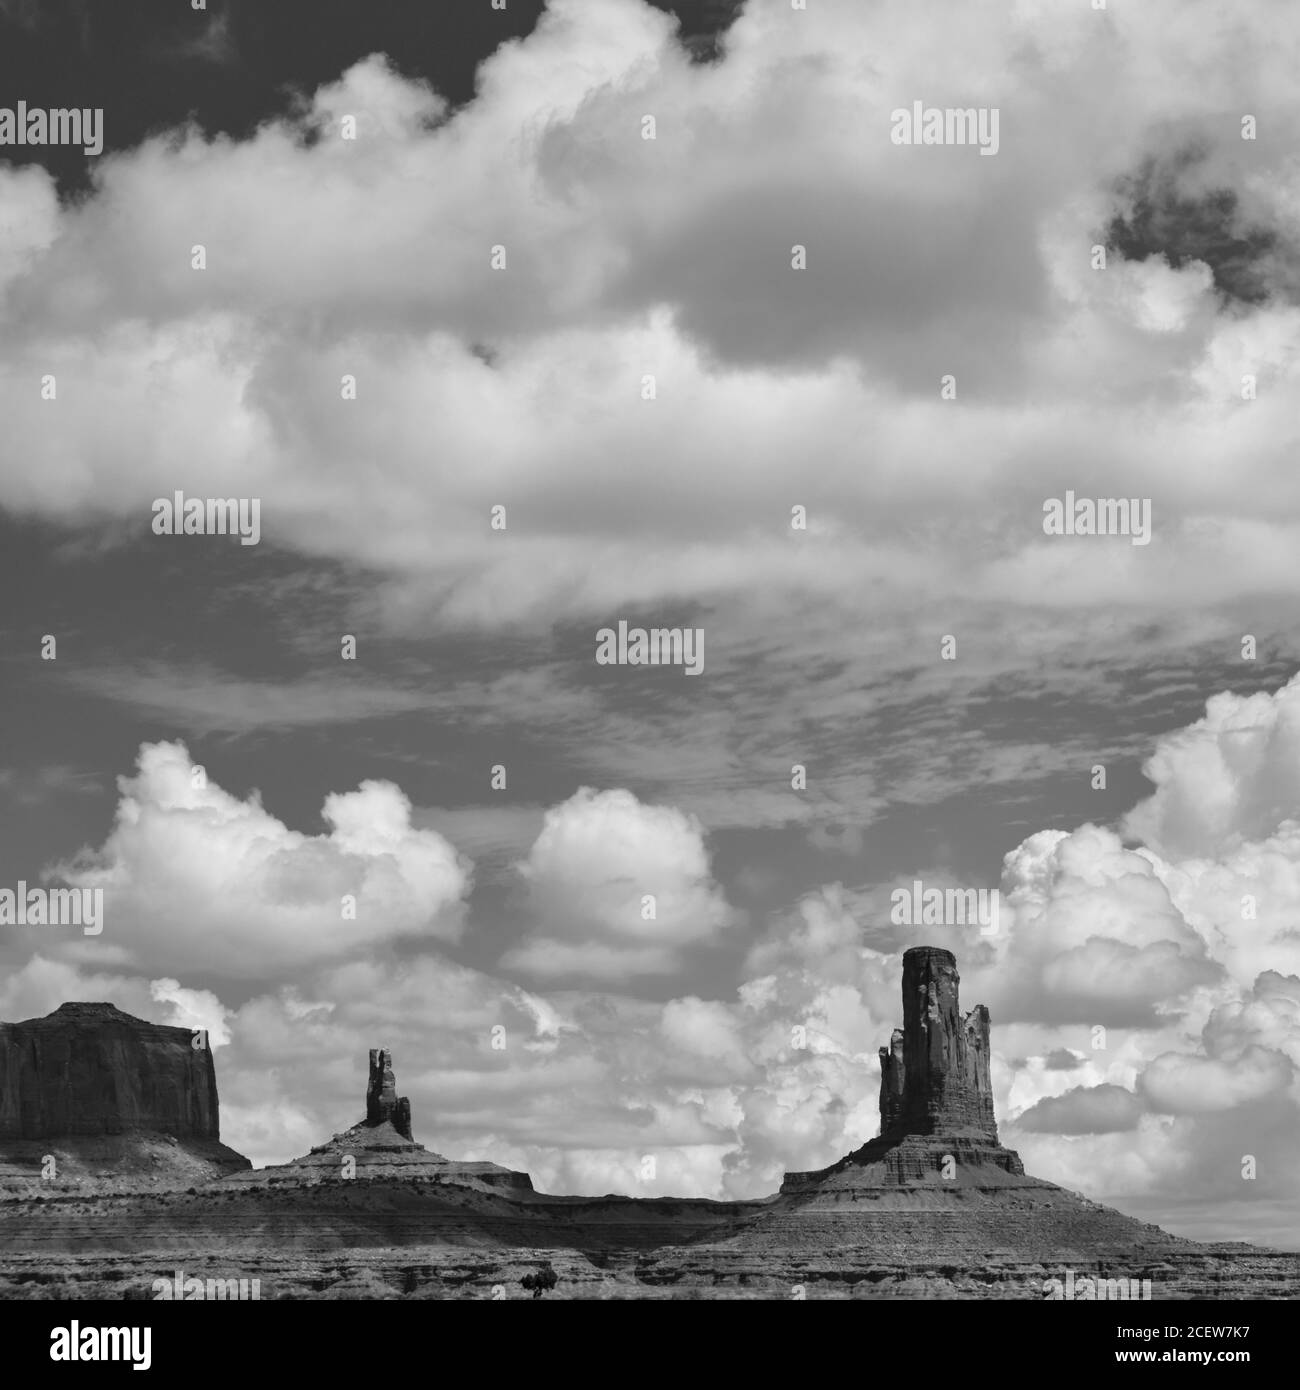 États-Unis d'Amérique, Arizona, Monument Valley Tribal Park. Le paysage emblématique des buttes de grès du parc tribal de Monument Valley se trouve Banque D'Images